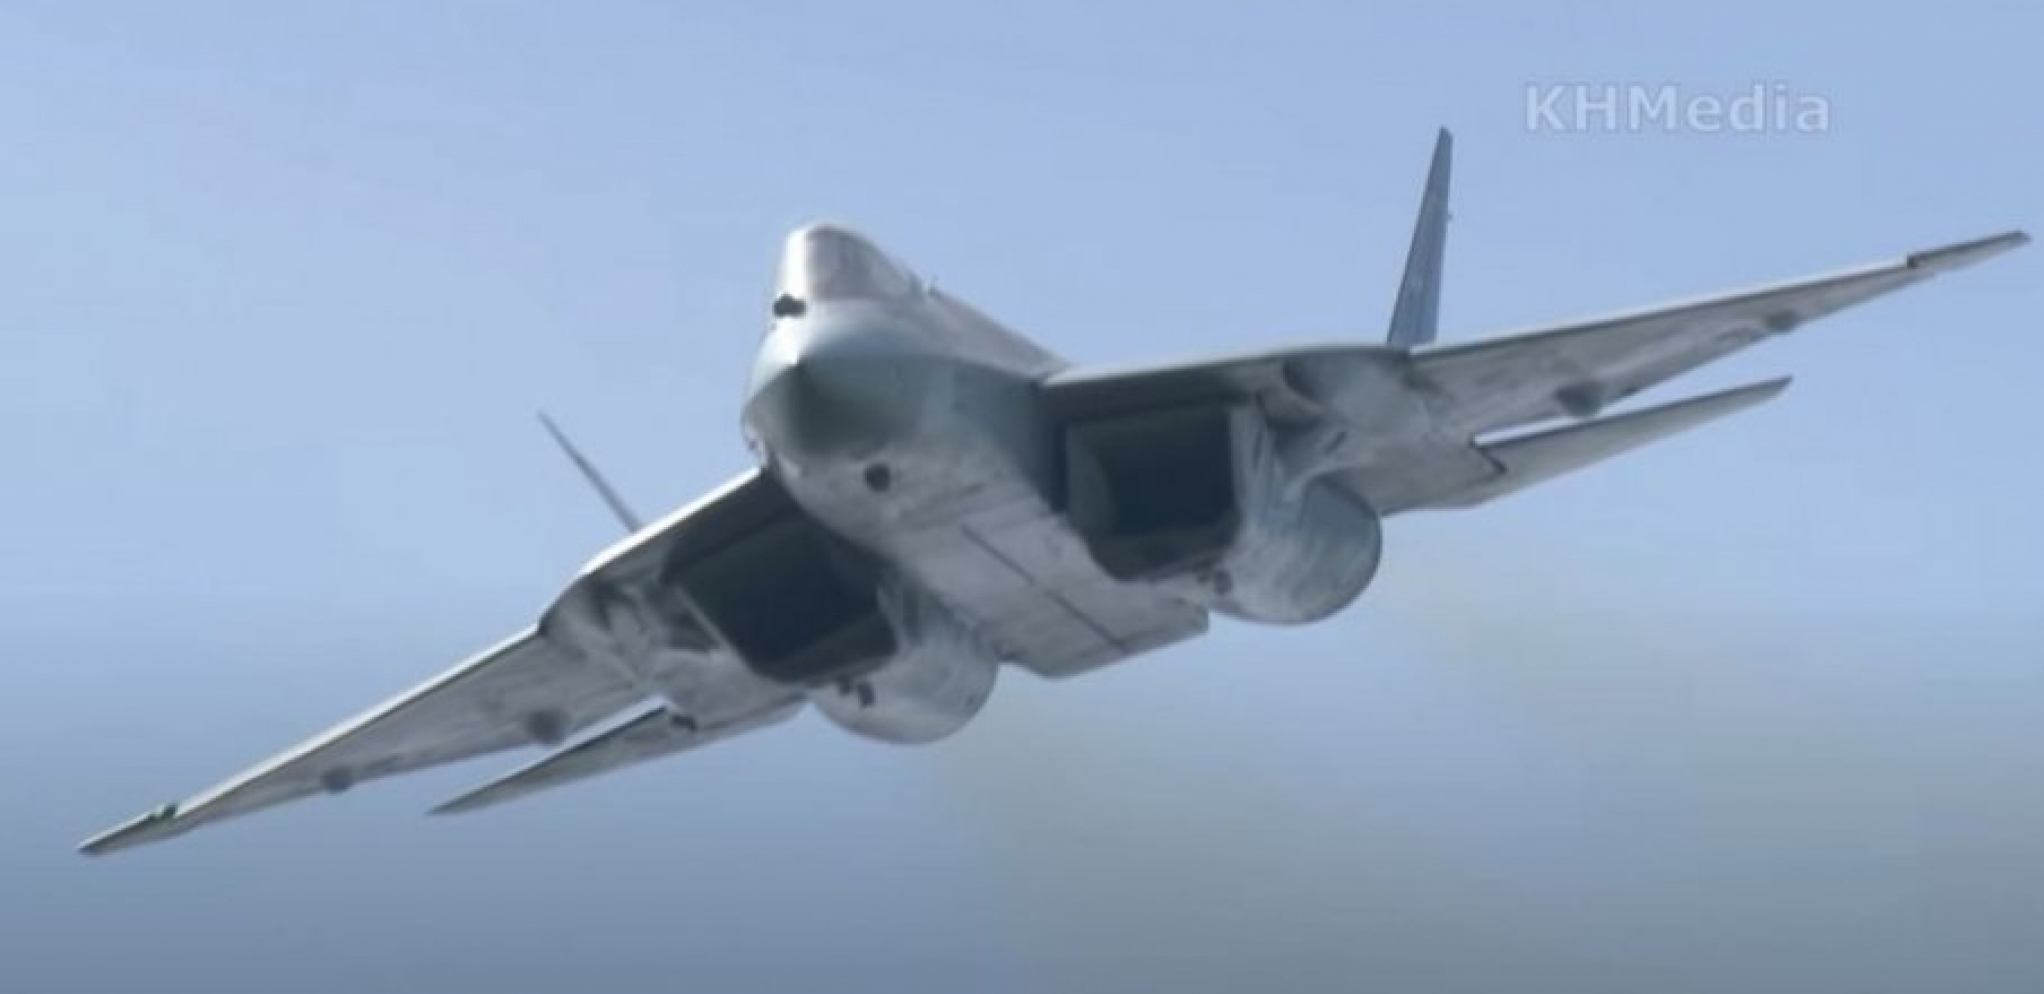 NATO JAČA PRISUSTVO U CRNOM MORU Američki lovci F-15 stigli u Rumuniju